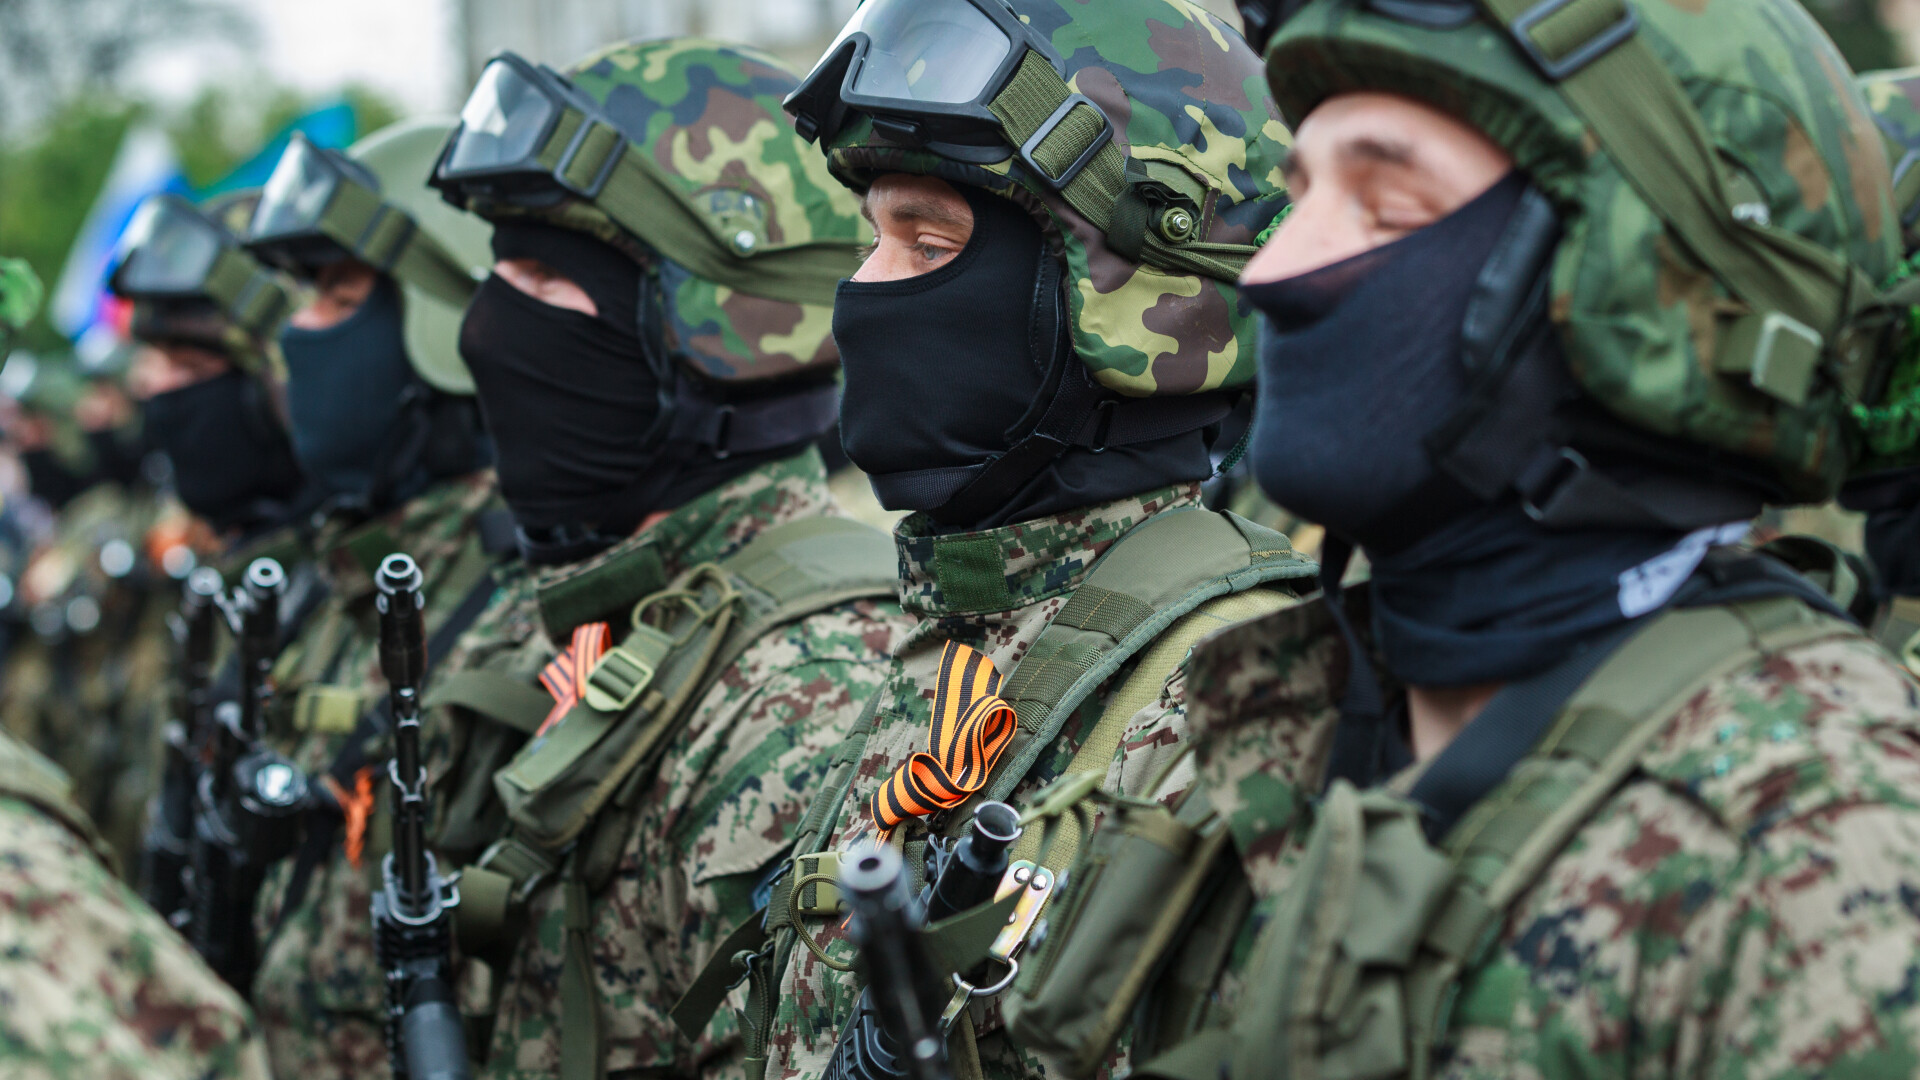 UE: Mobilizarea militară rusă la frontiera cu Ucraina, cea mai masivă de până acum